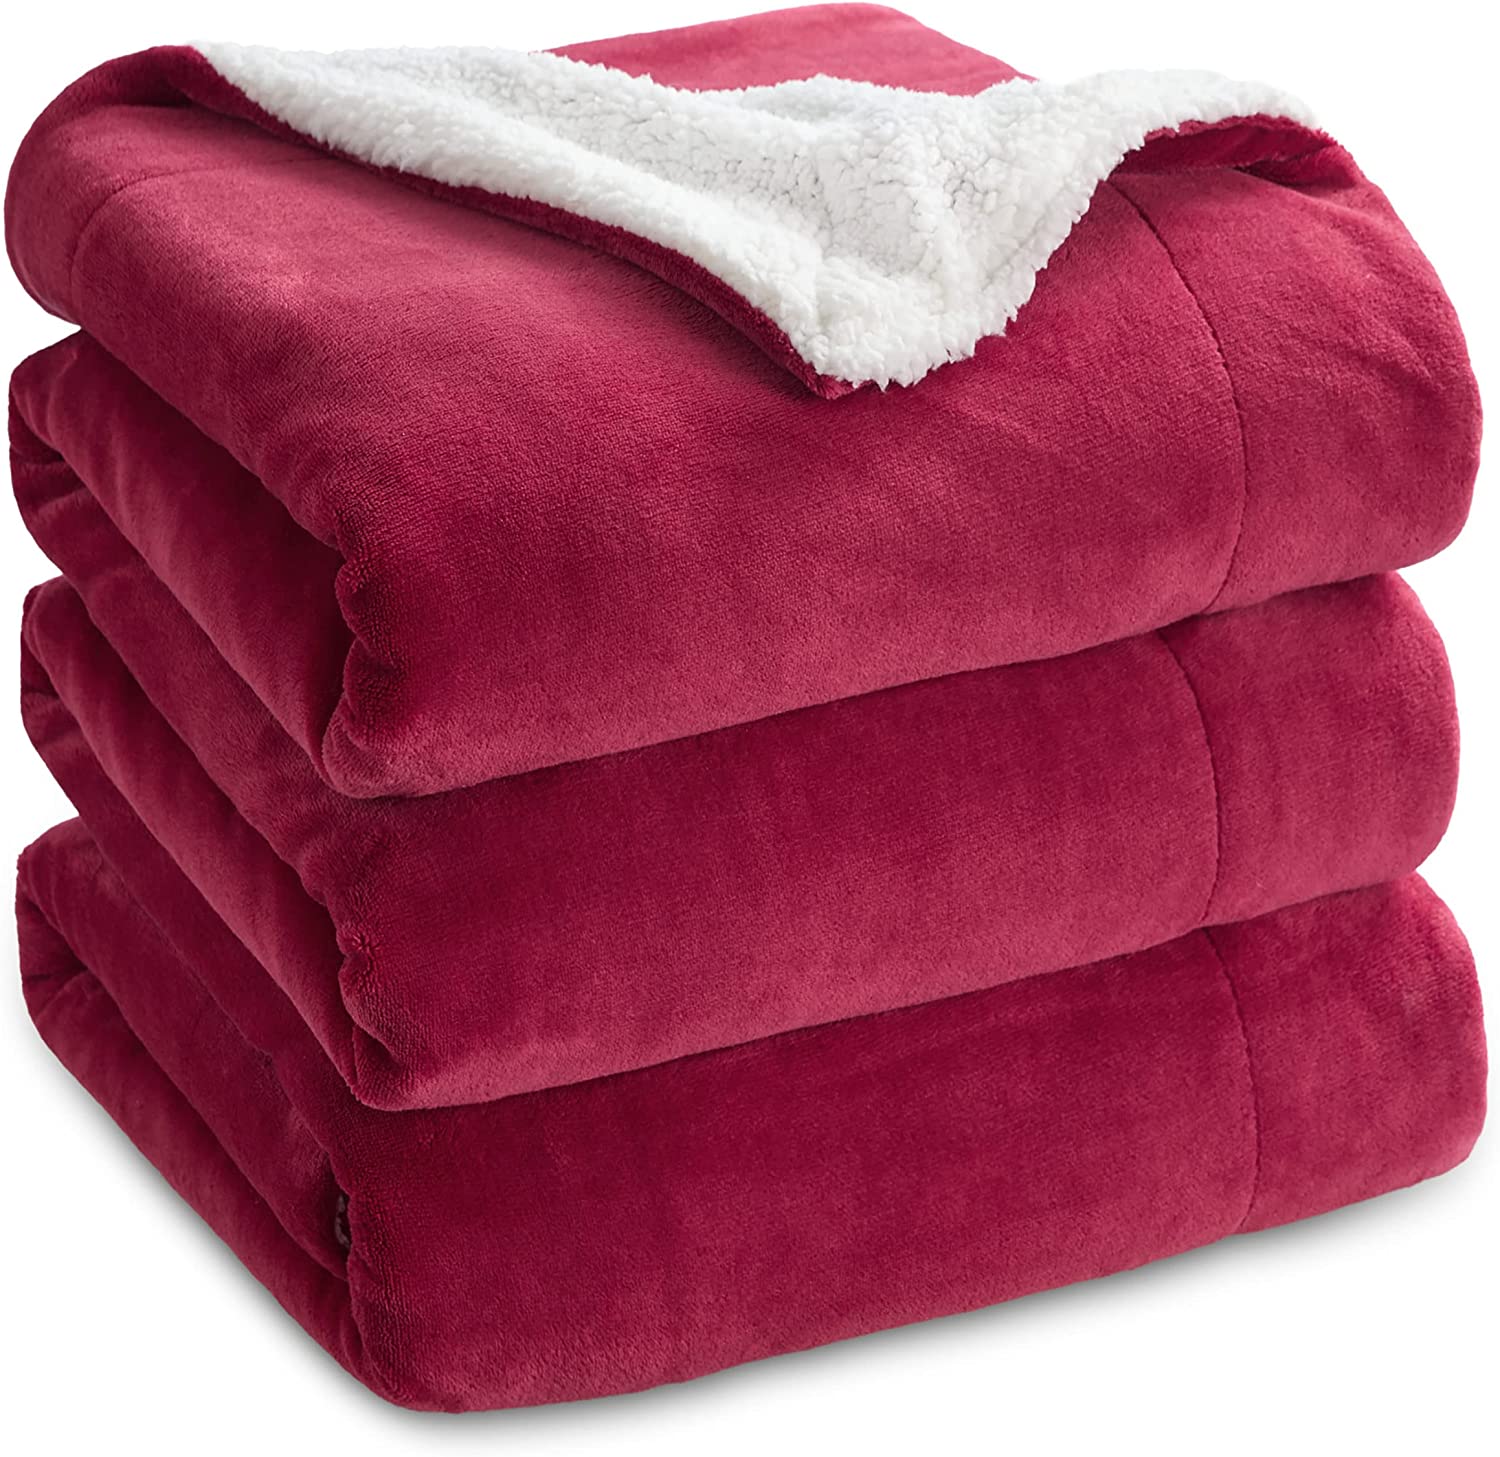 Bedsure Sherpa Fleece Bed Blankets Queen Size